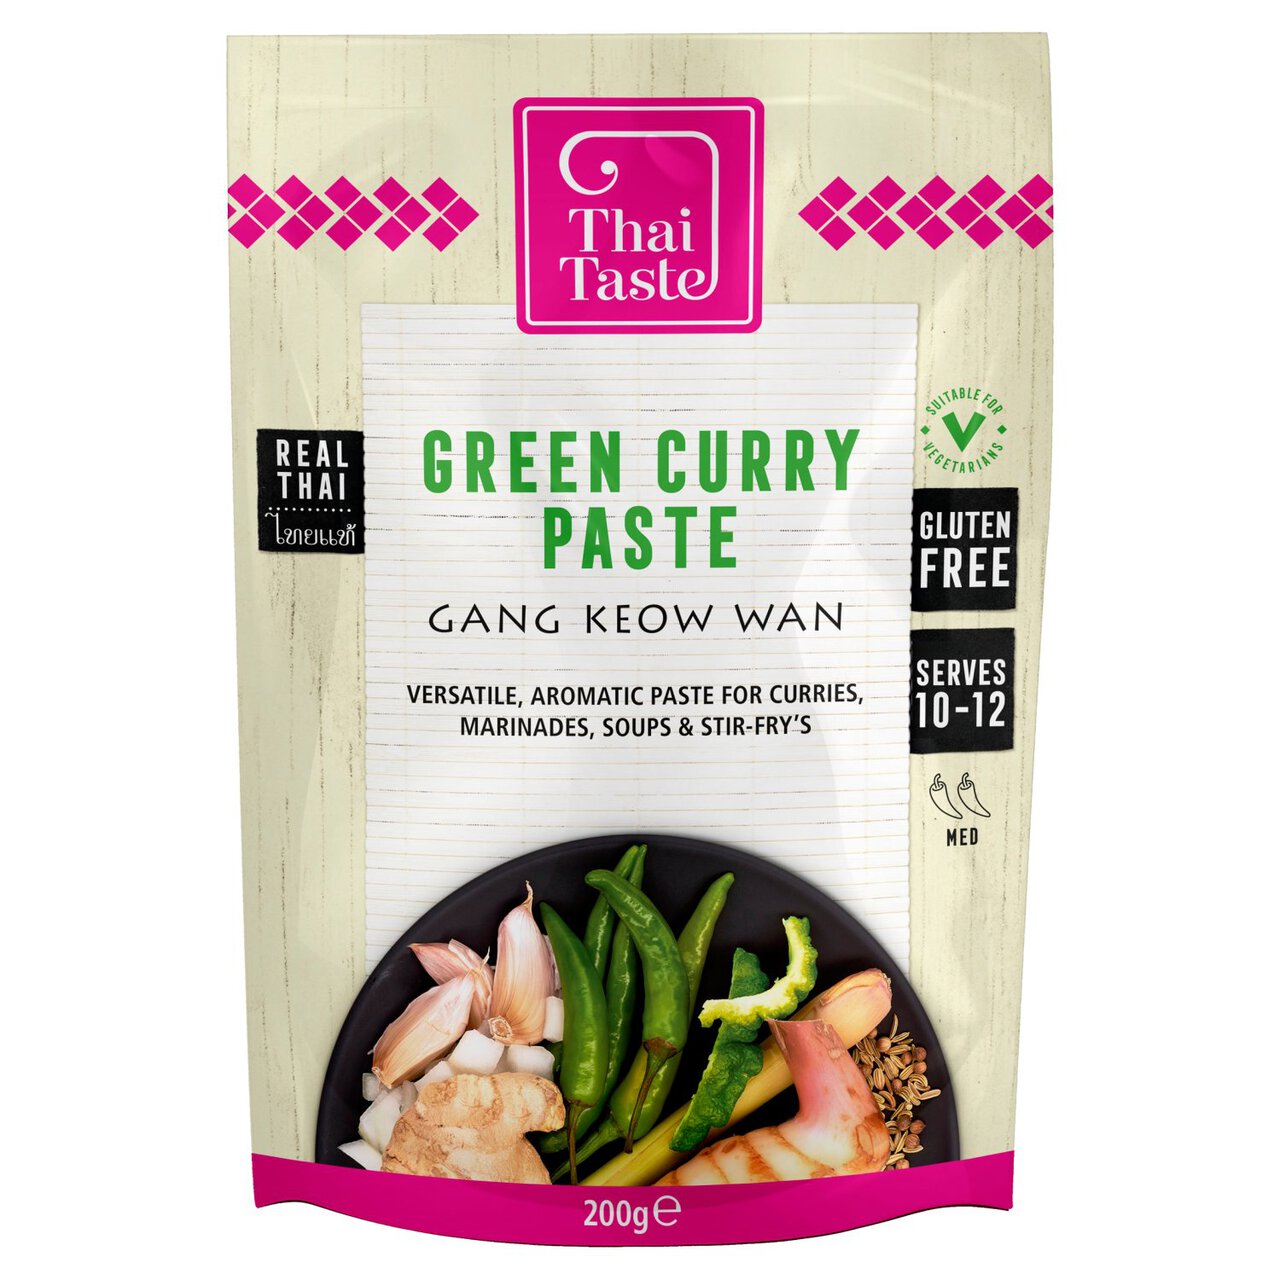 Thai Taste Green Curry Paste in Pouch 200g